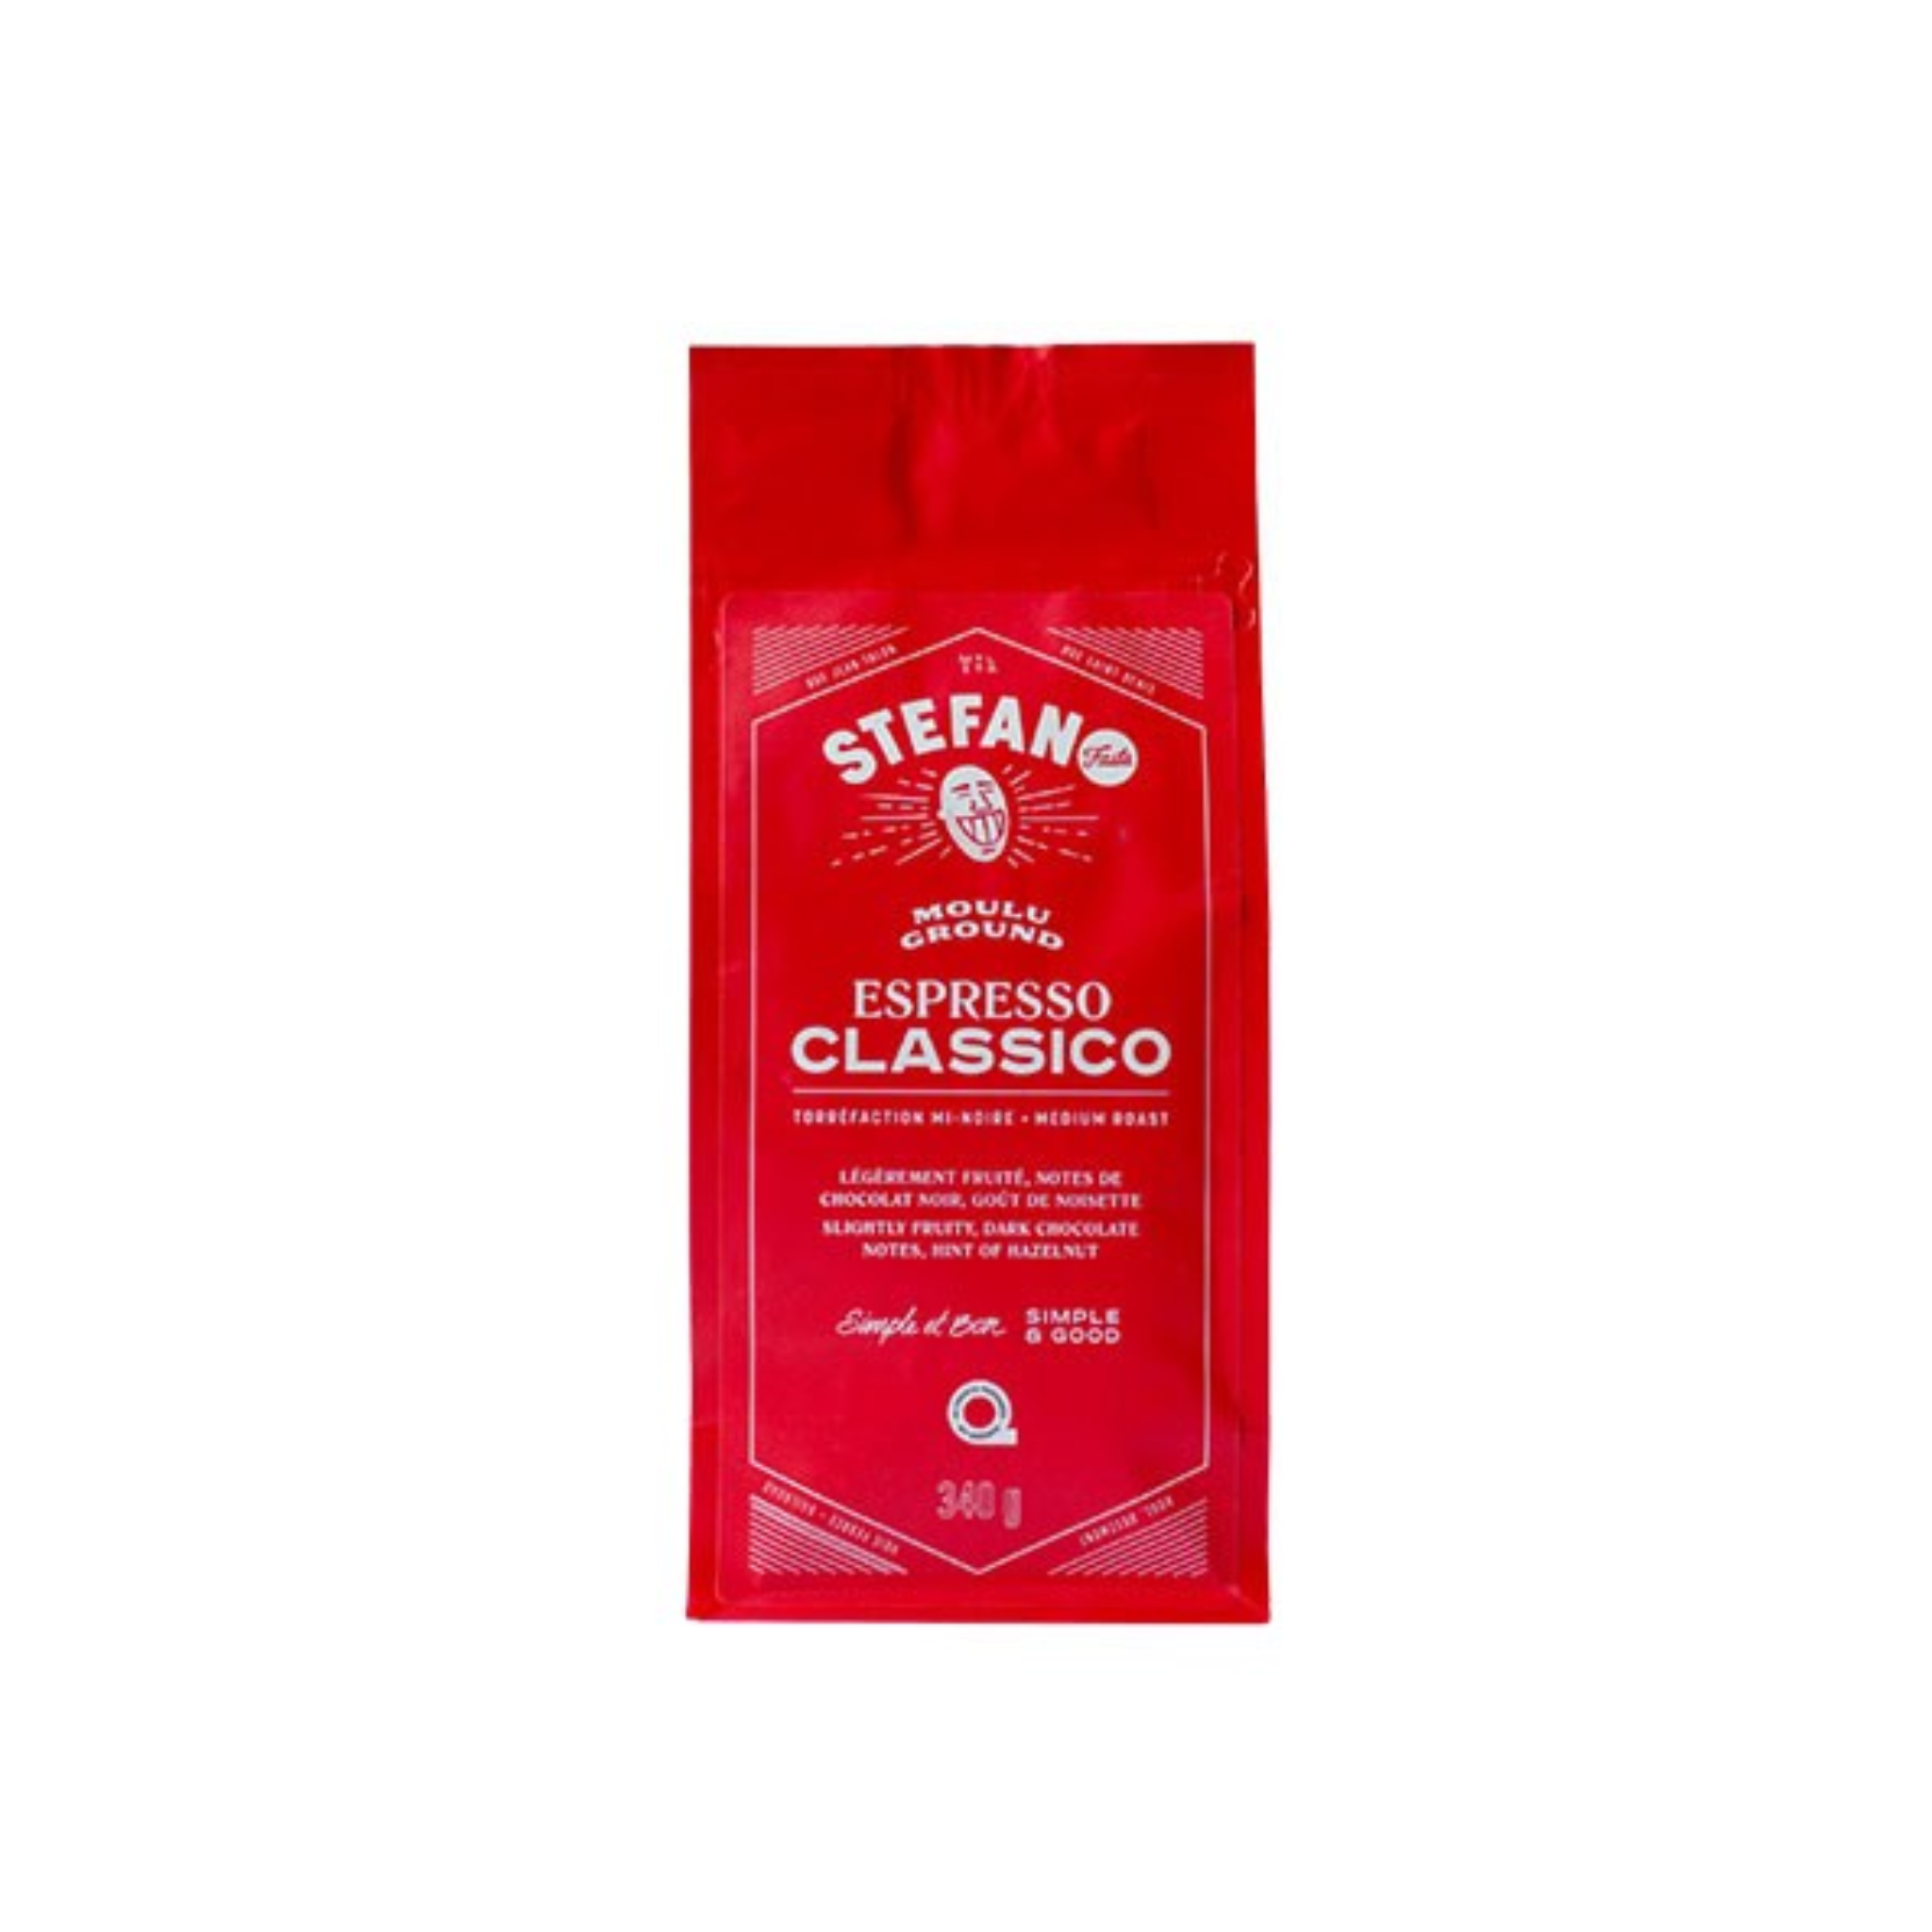 Stefano Espresso Classico Ground Coffee